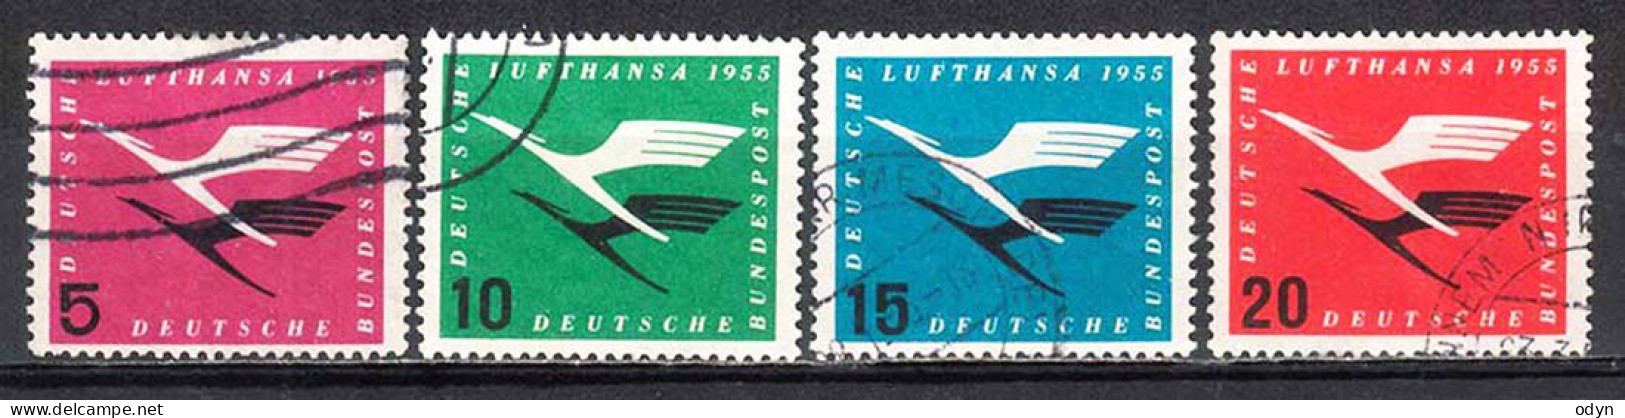 BRD 1955, Lot Of 21 Stamps including 4 Complete Sets MiNr 205-208 - Used - Oblitérés